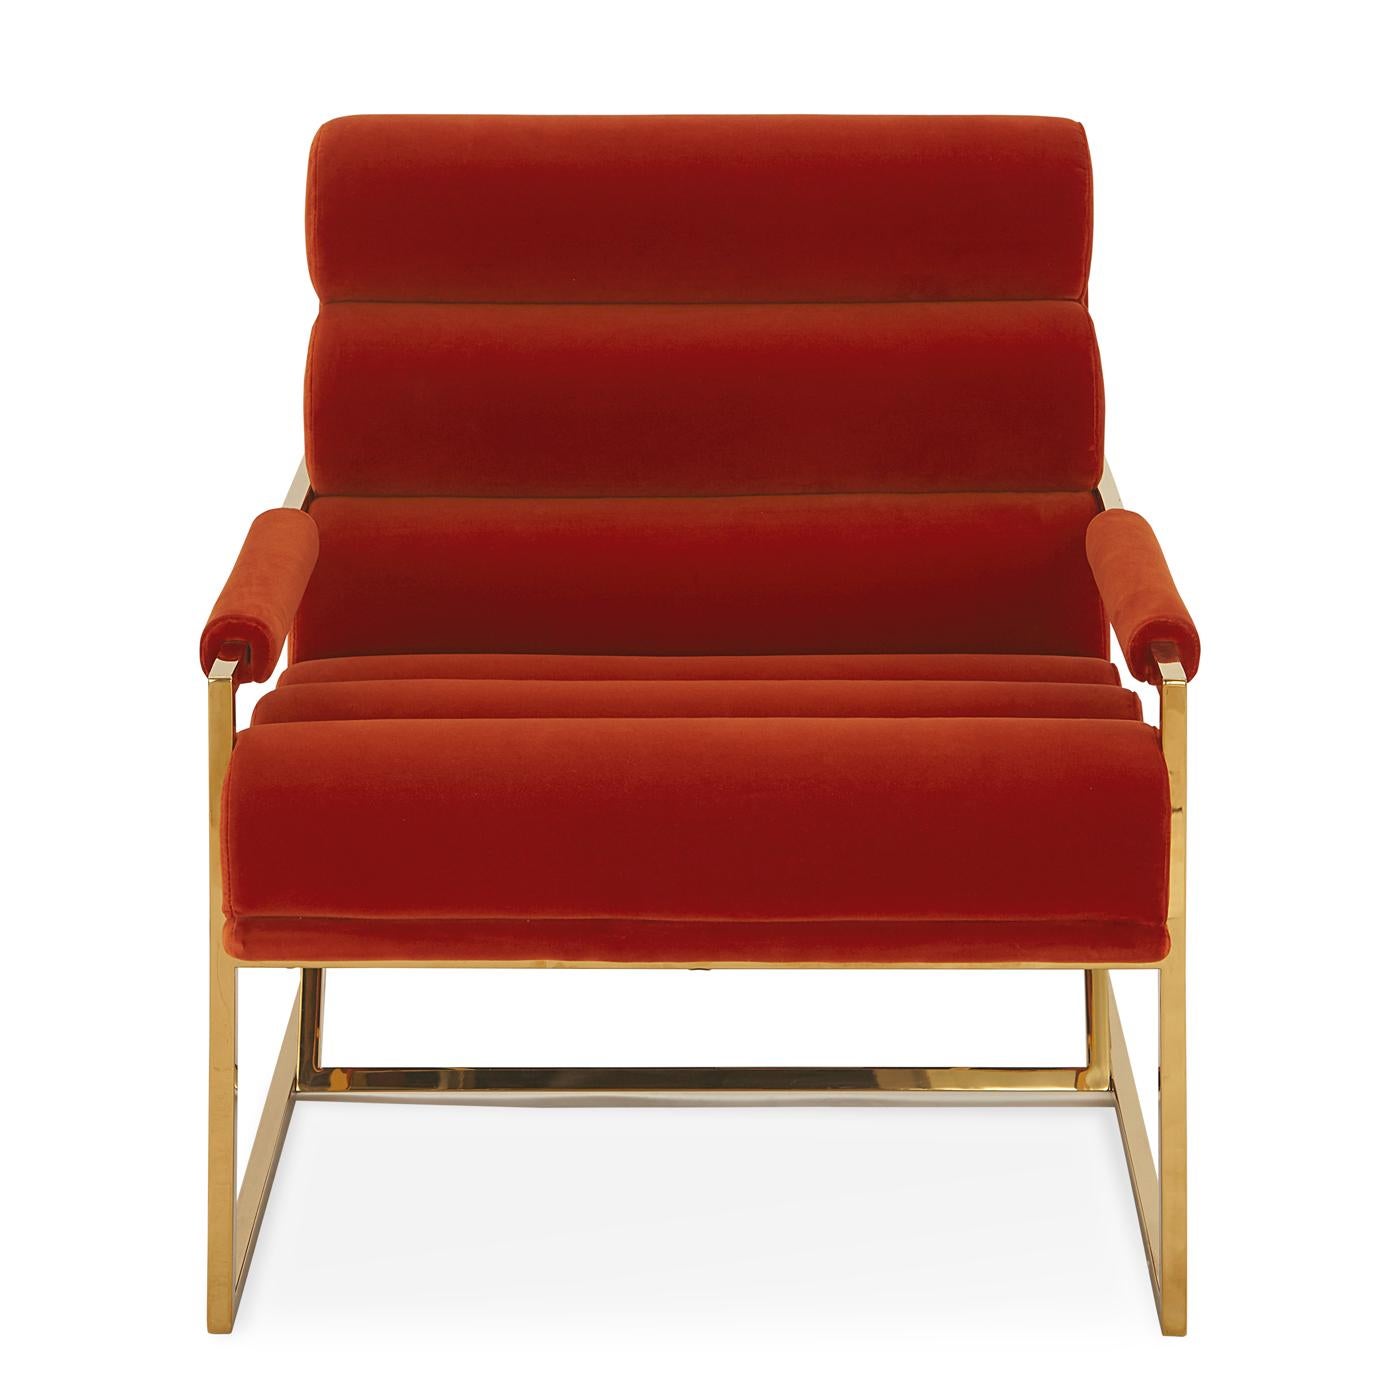 Schockwellen. Minimalistischer Komfort im modernistischen Gewand - mit dem Channeled Goldfinger Lounge Chair haben wir unsere Definition von absolutem Luxus auf die nächste Stufe gehoben. Ultrabequeme, kanellierte Kissen und plüschige Armlehnen